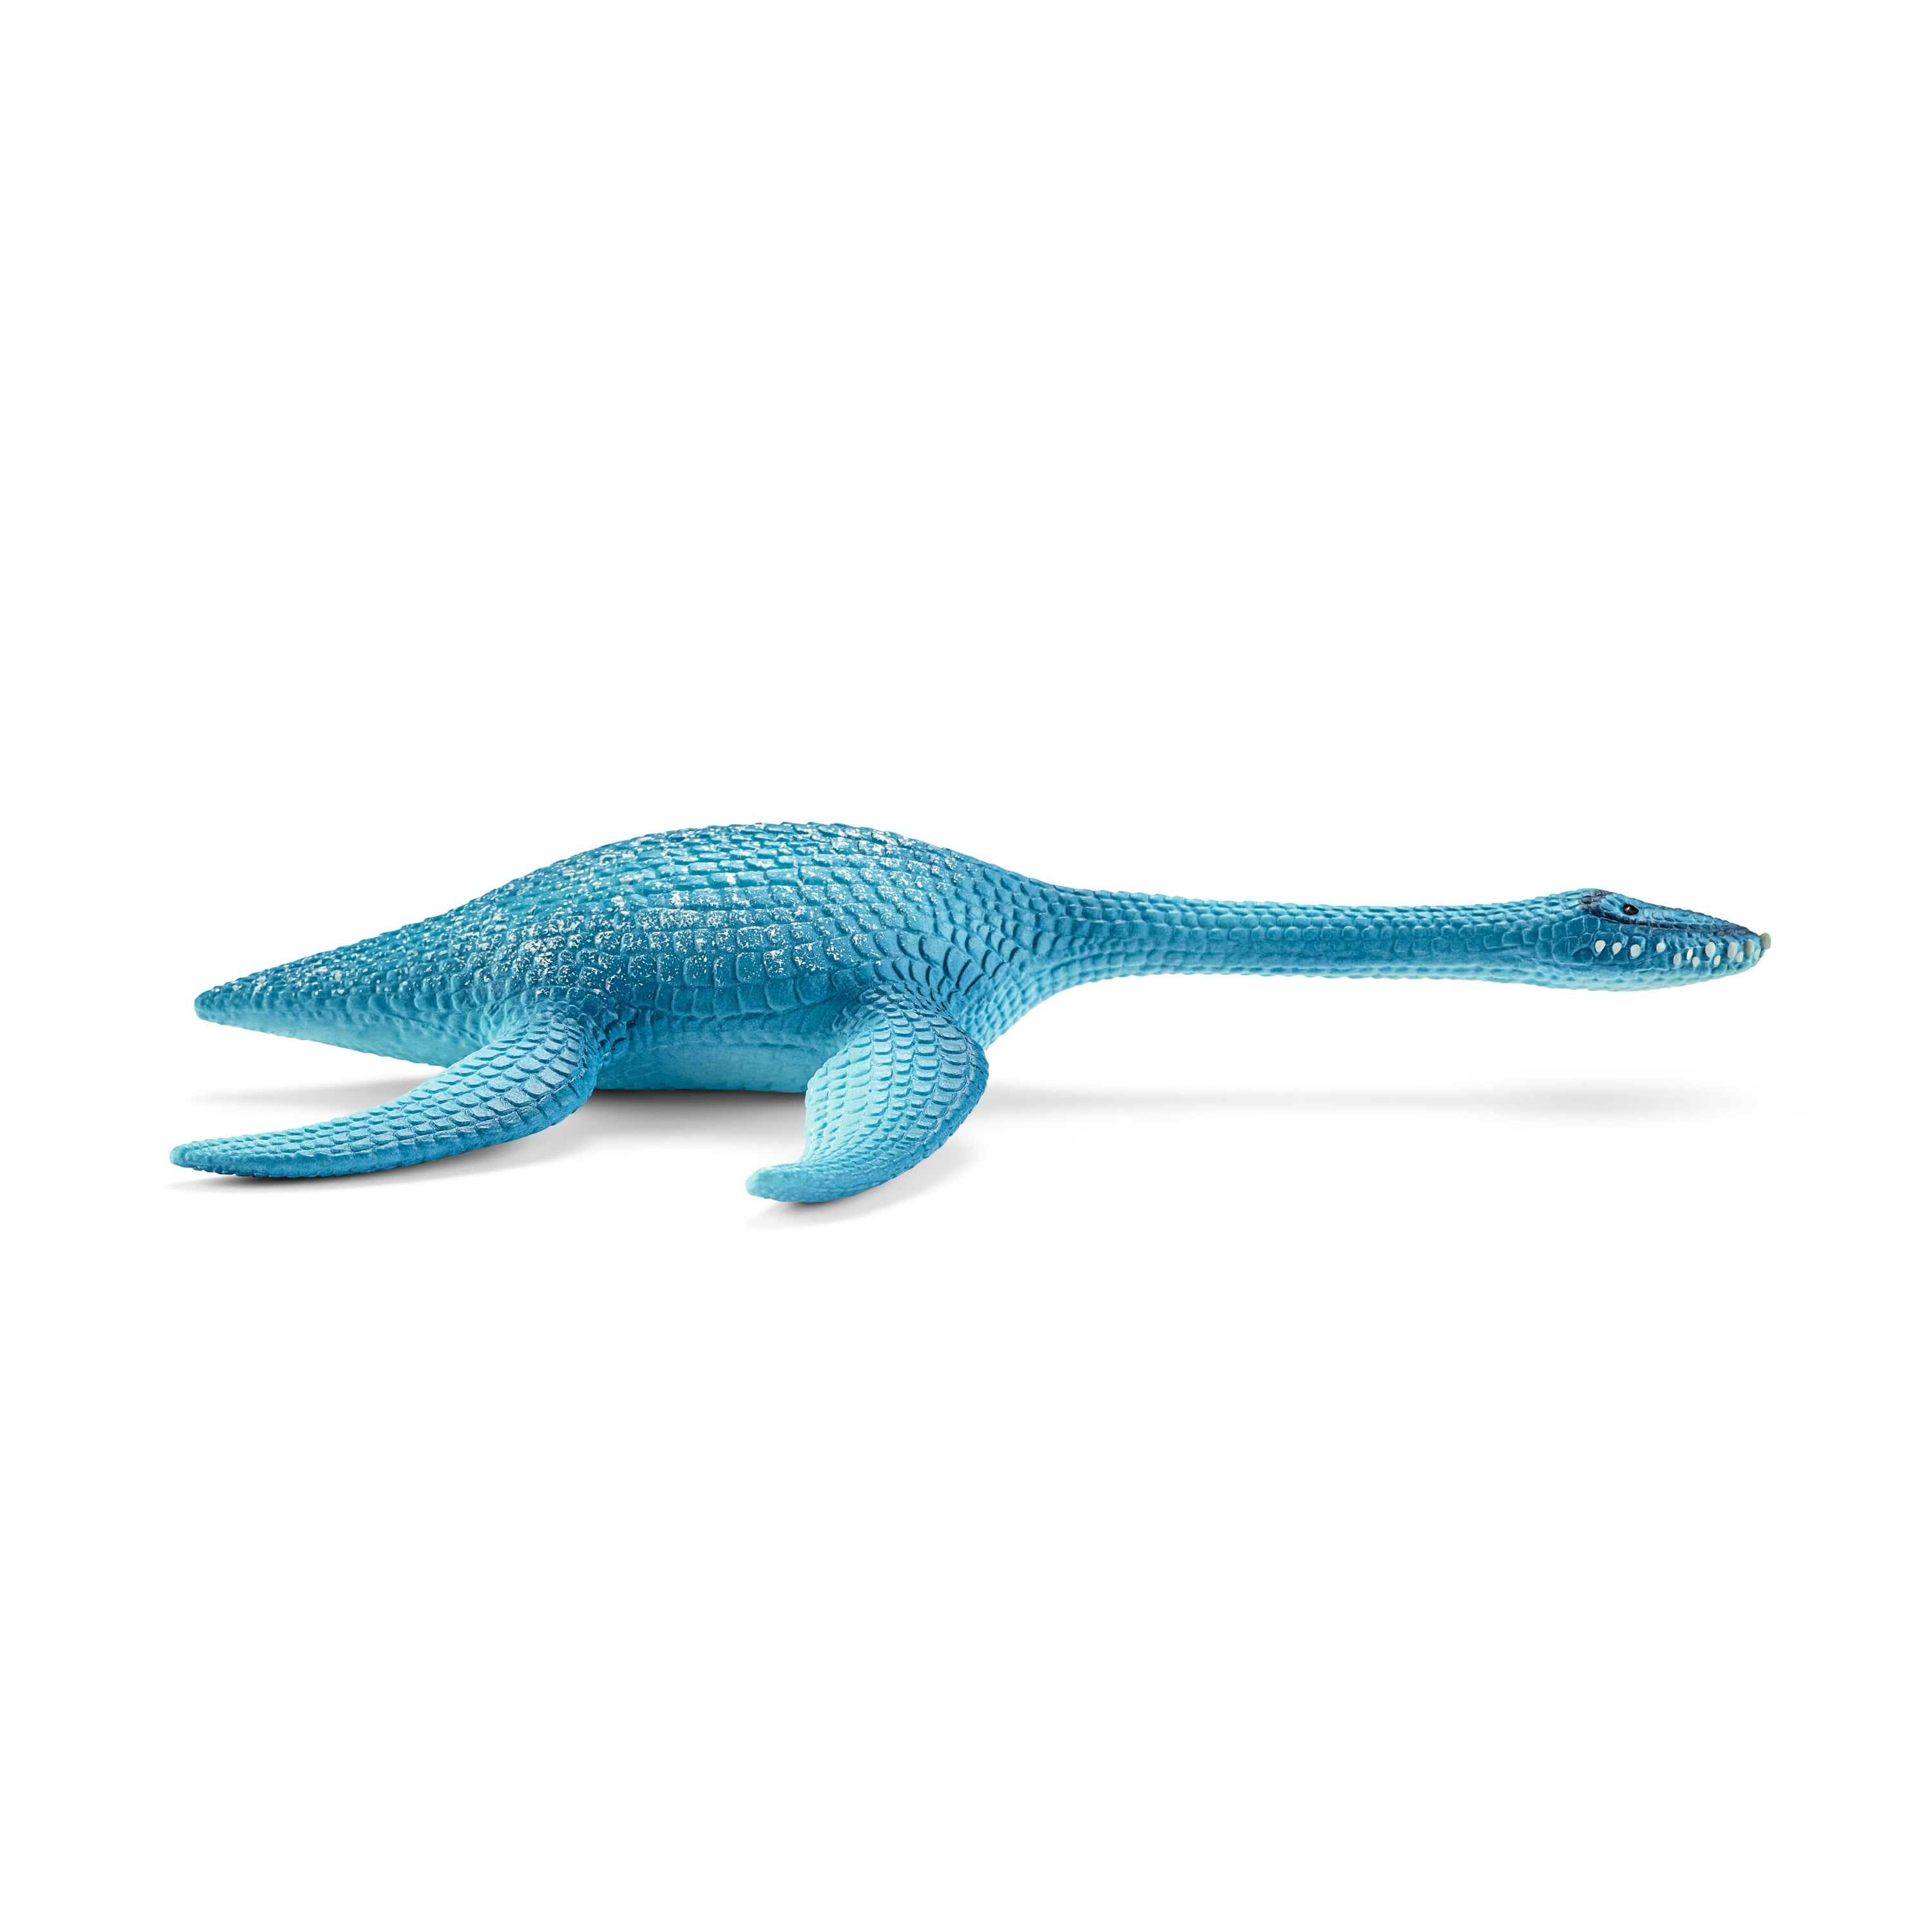 Large Soft Plastic Plesiosaur Dinosaur Prehistoric Life Toy Figure Animal Dinosa 